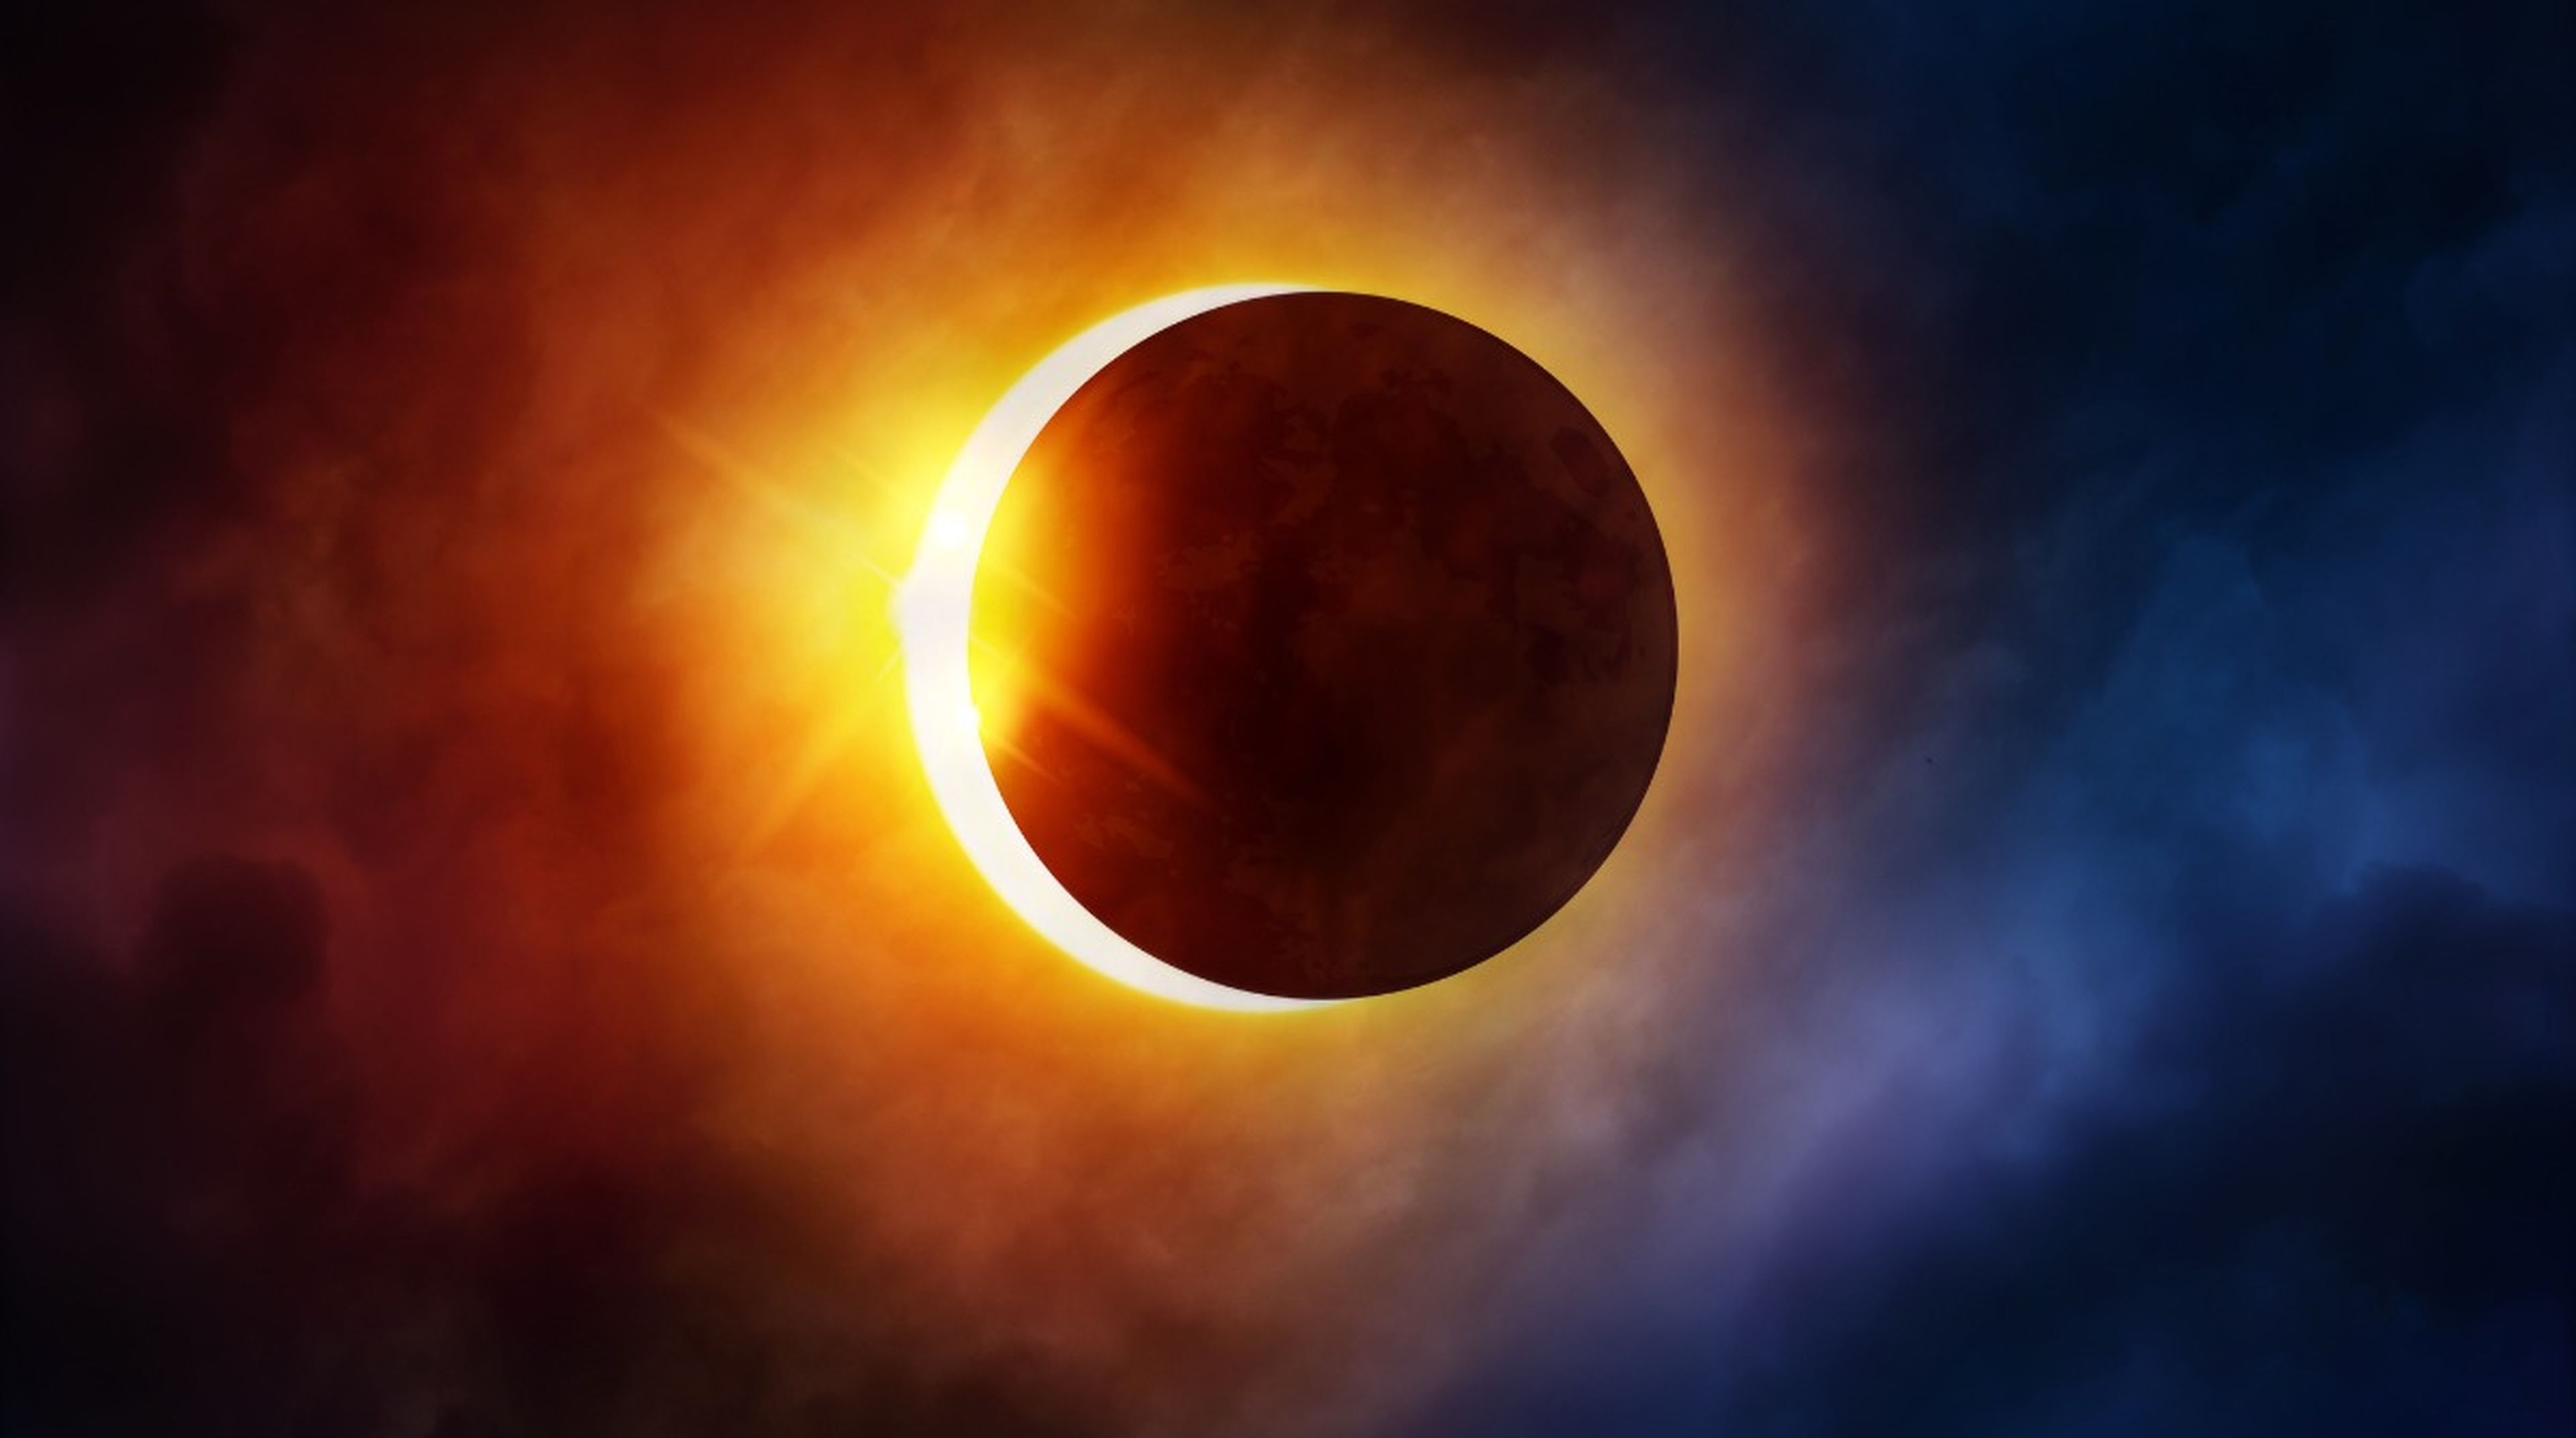 Uno de los eclipses más raros cubrirá los cielos de algunas zonas el 20 de abril